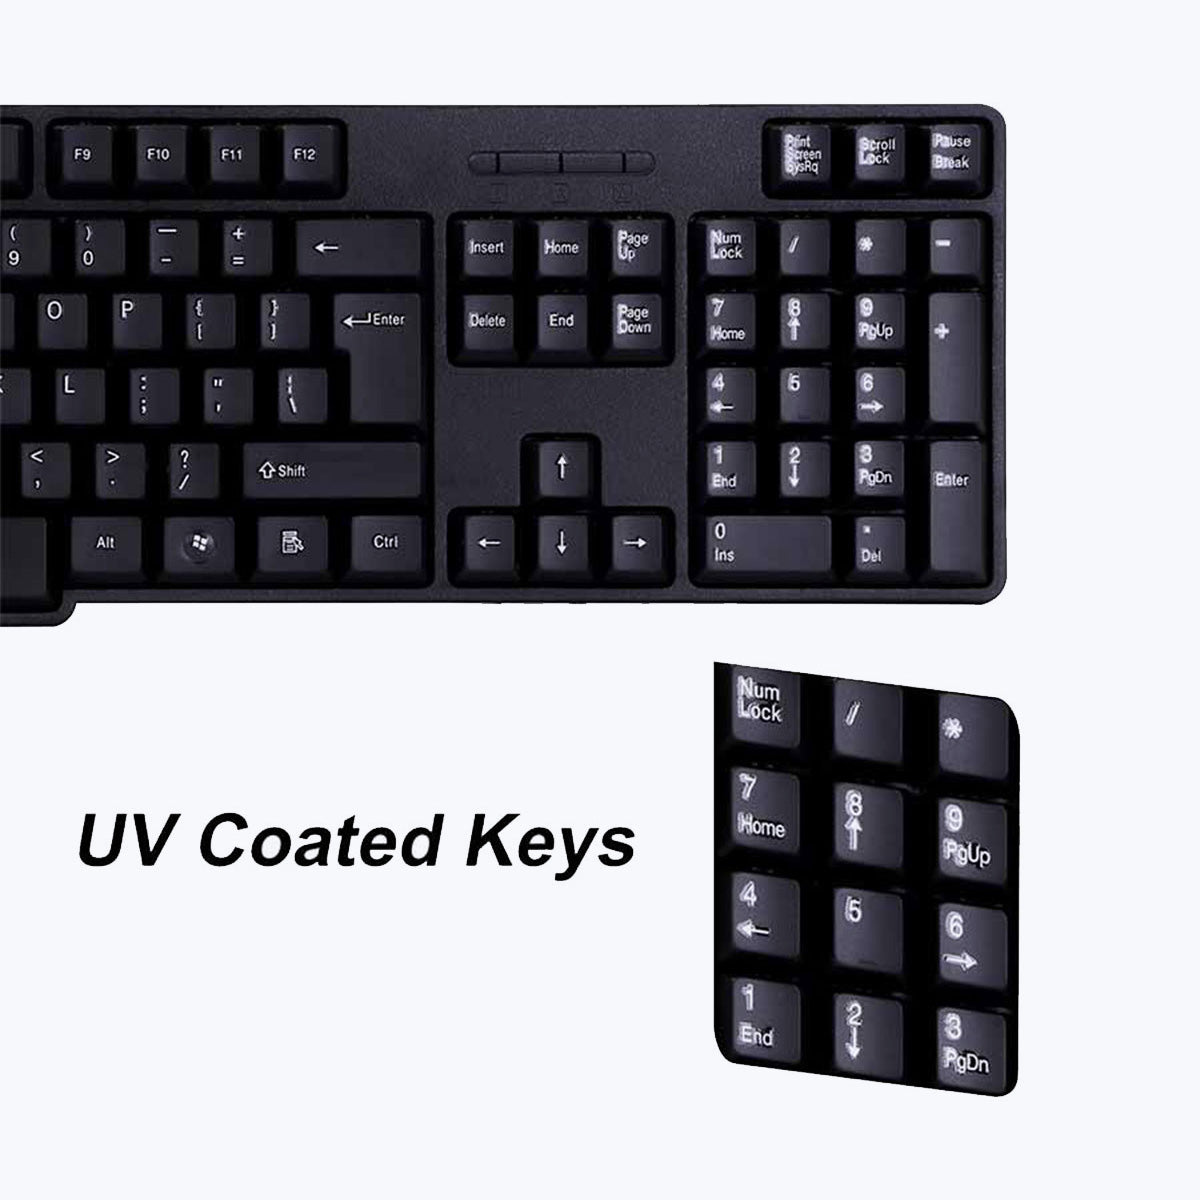 Zeb-Judwaa 750 - Keyboard and Mouse Combo - Zebronics